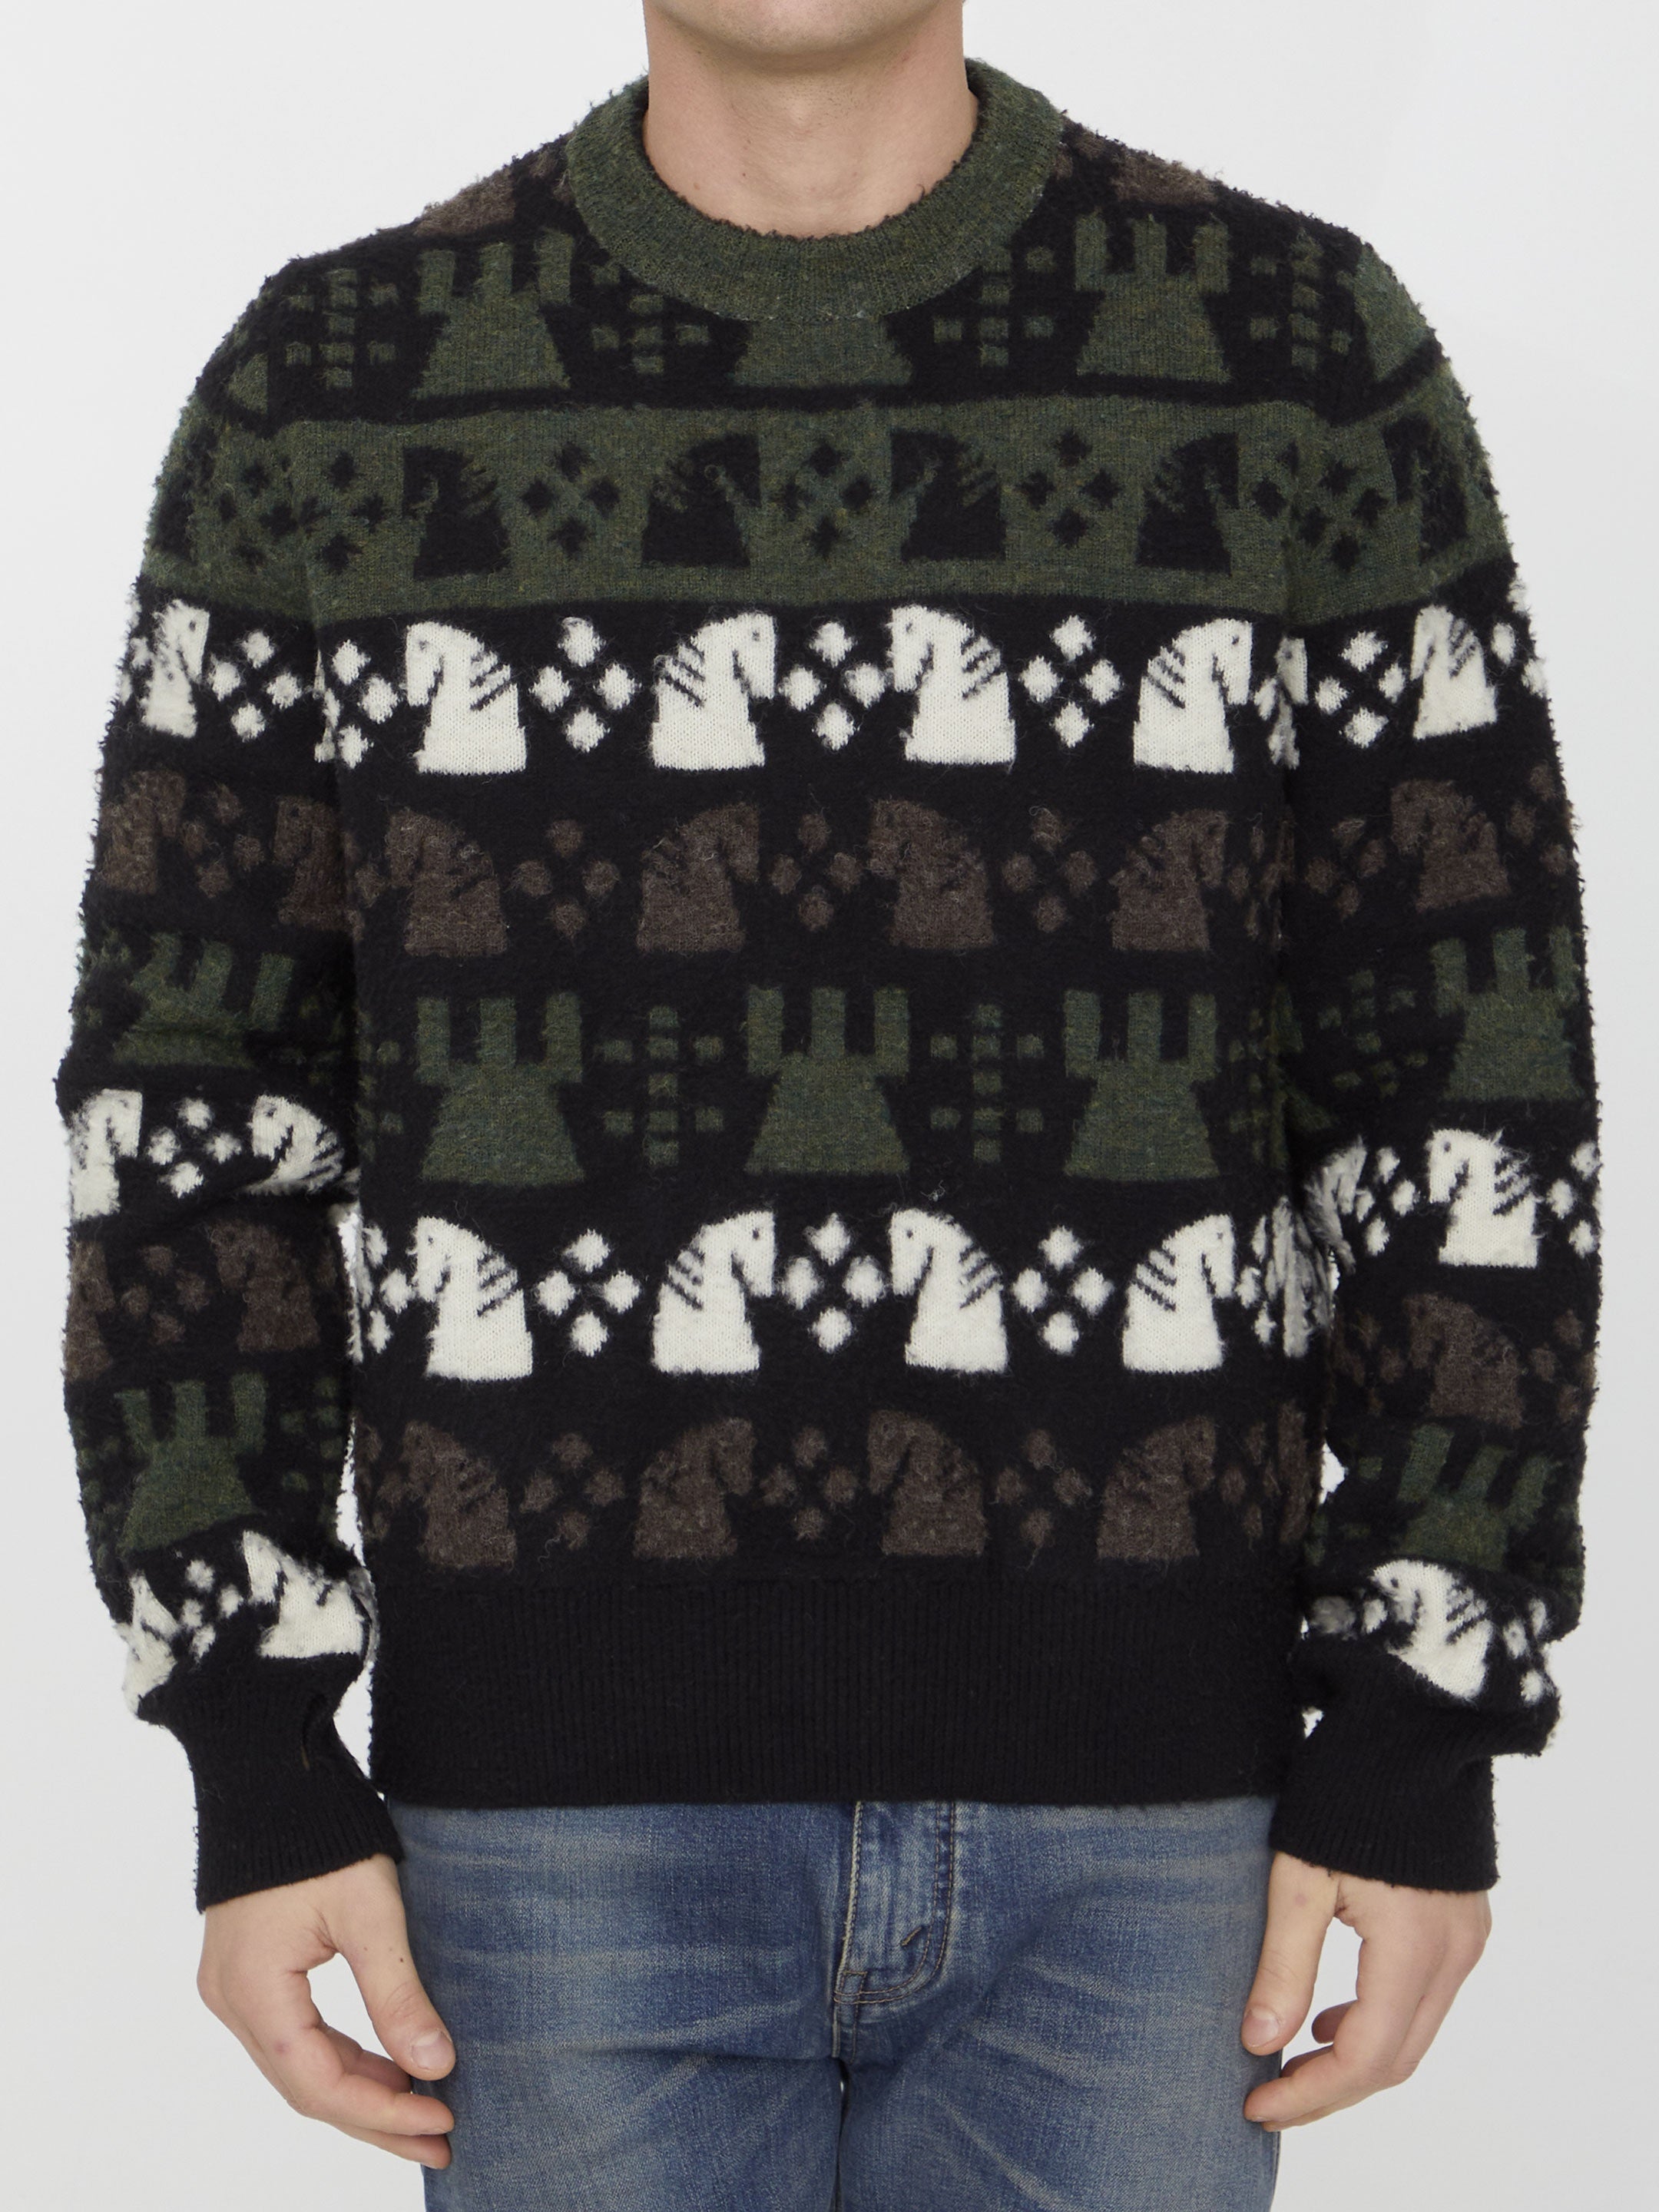 Chess pattern sweater